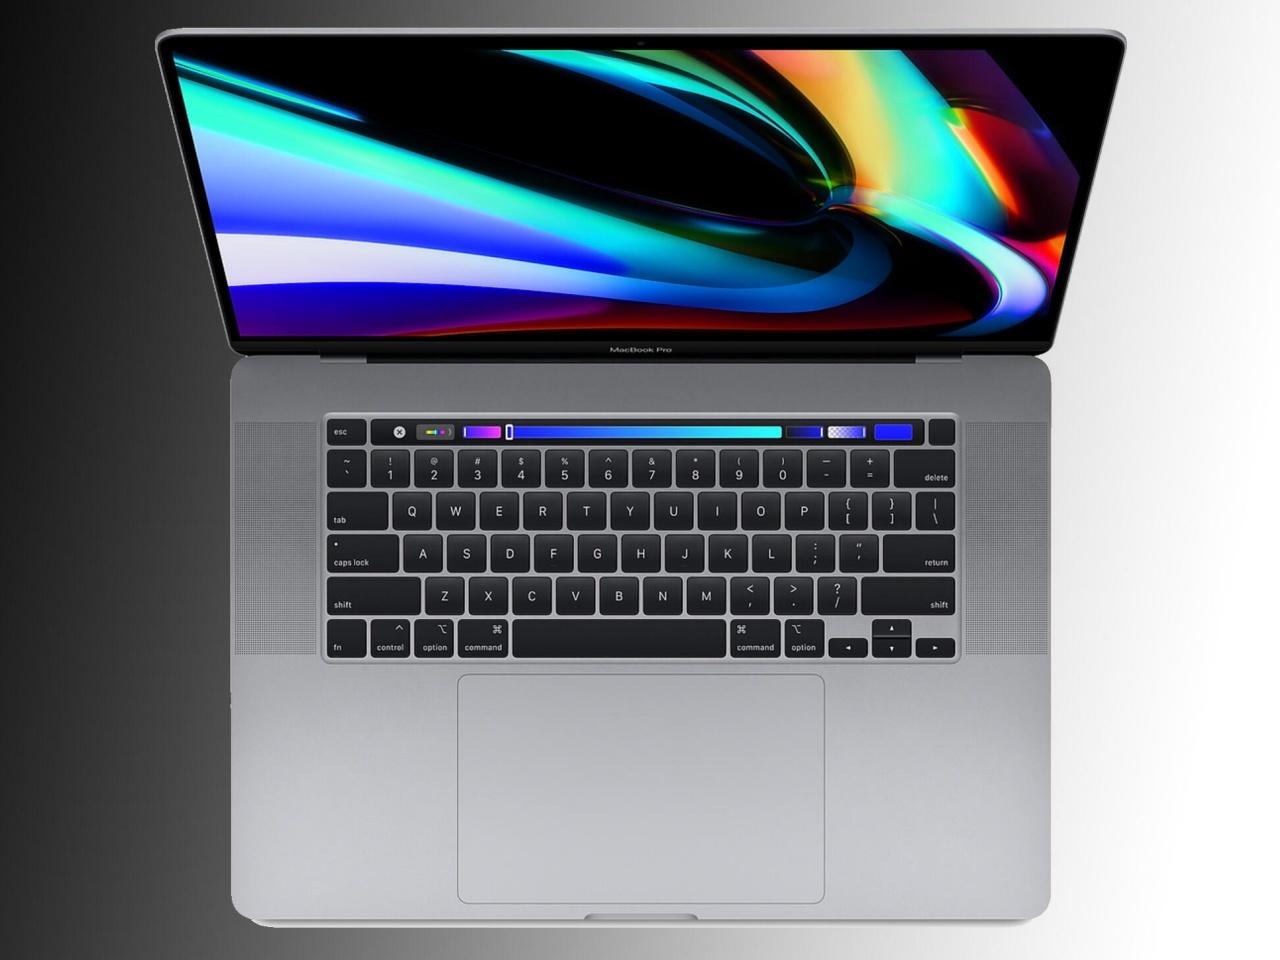 シザー式キーボード搭載の新「MacBook Pro」「MacBook Air」、第